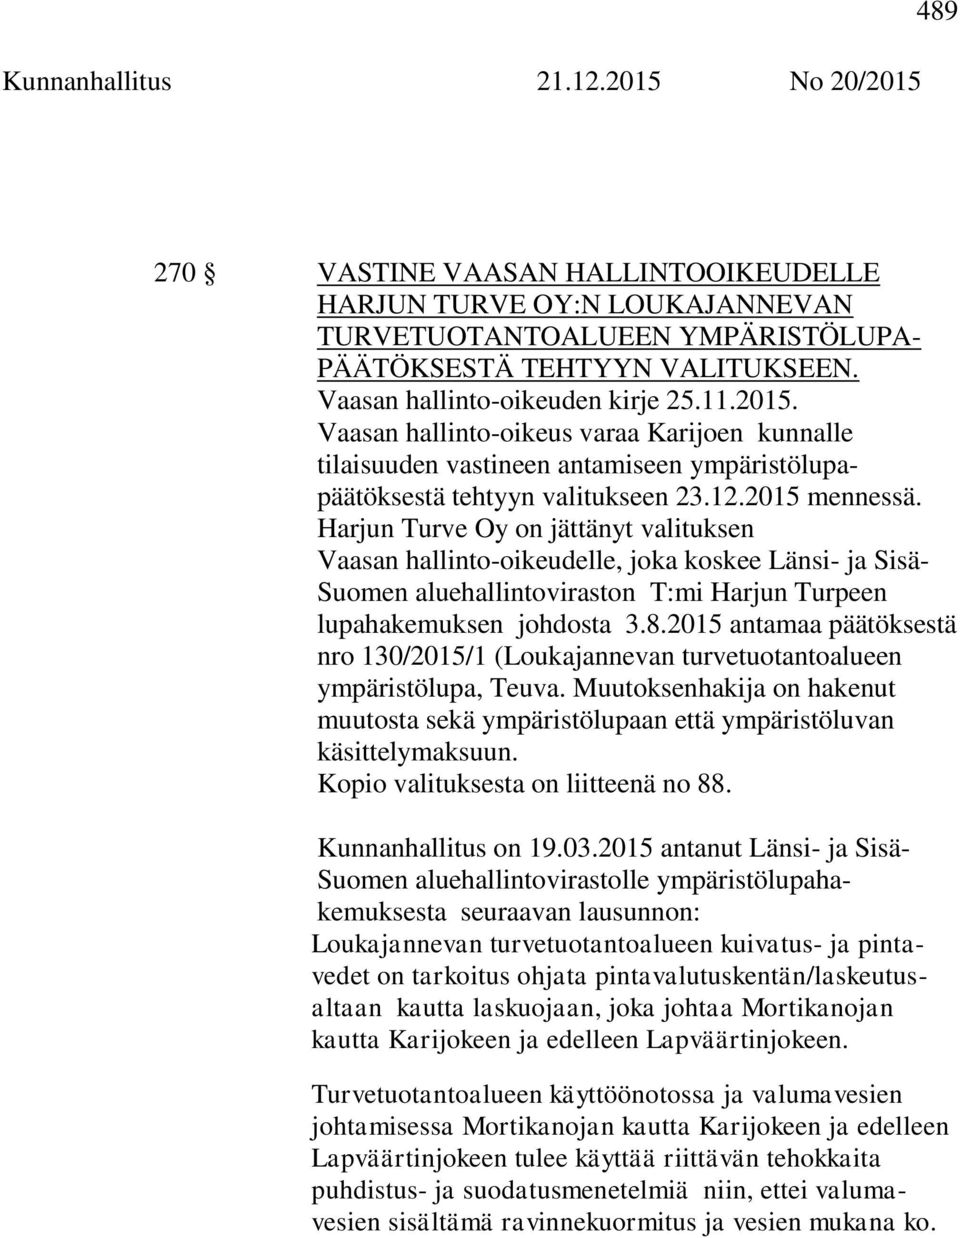 Harjun Turve Oy on jättänyt valituksen Vaasan hallinto-oikeudelle, joka koskee Länsi- ja Sisä- Suomen aluehallintoviraston T:mi Harjun Turpeen lupahakemuksen johdosta 3.8.